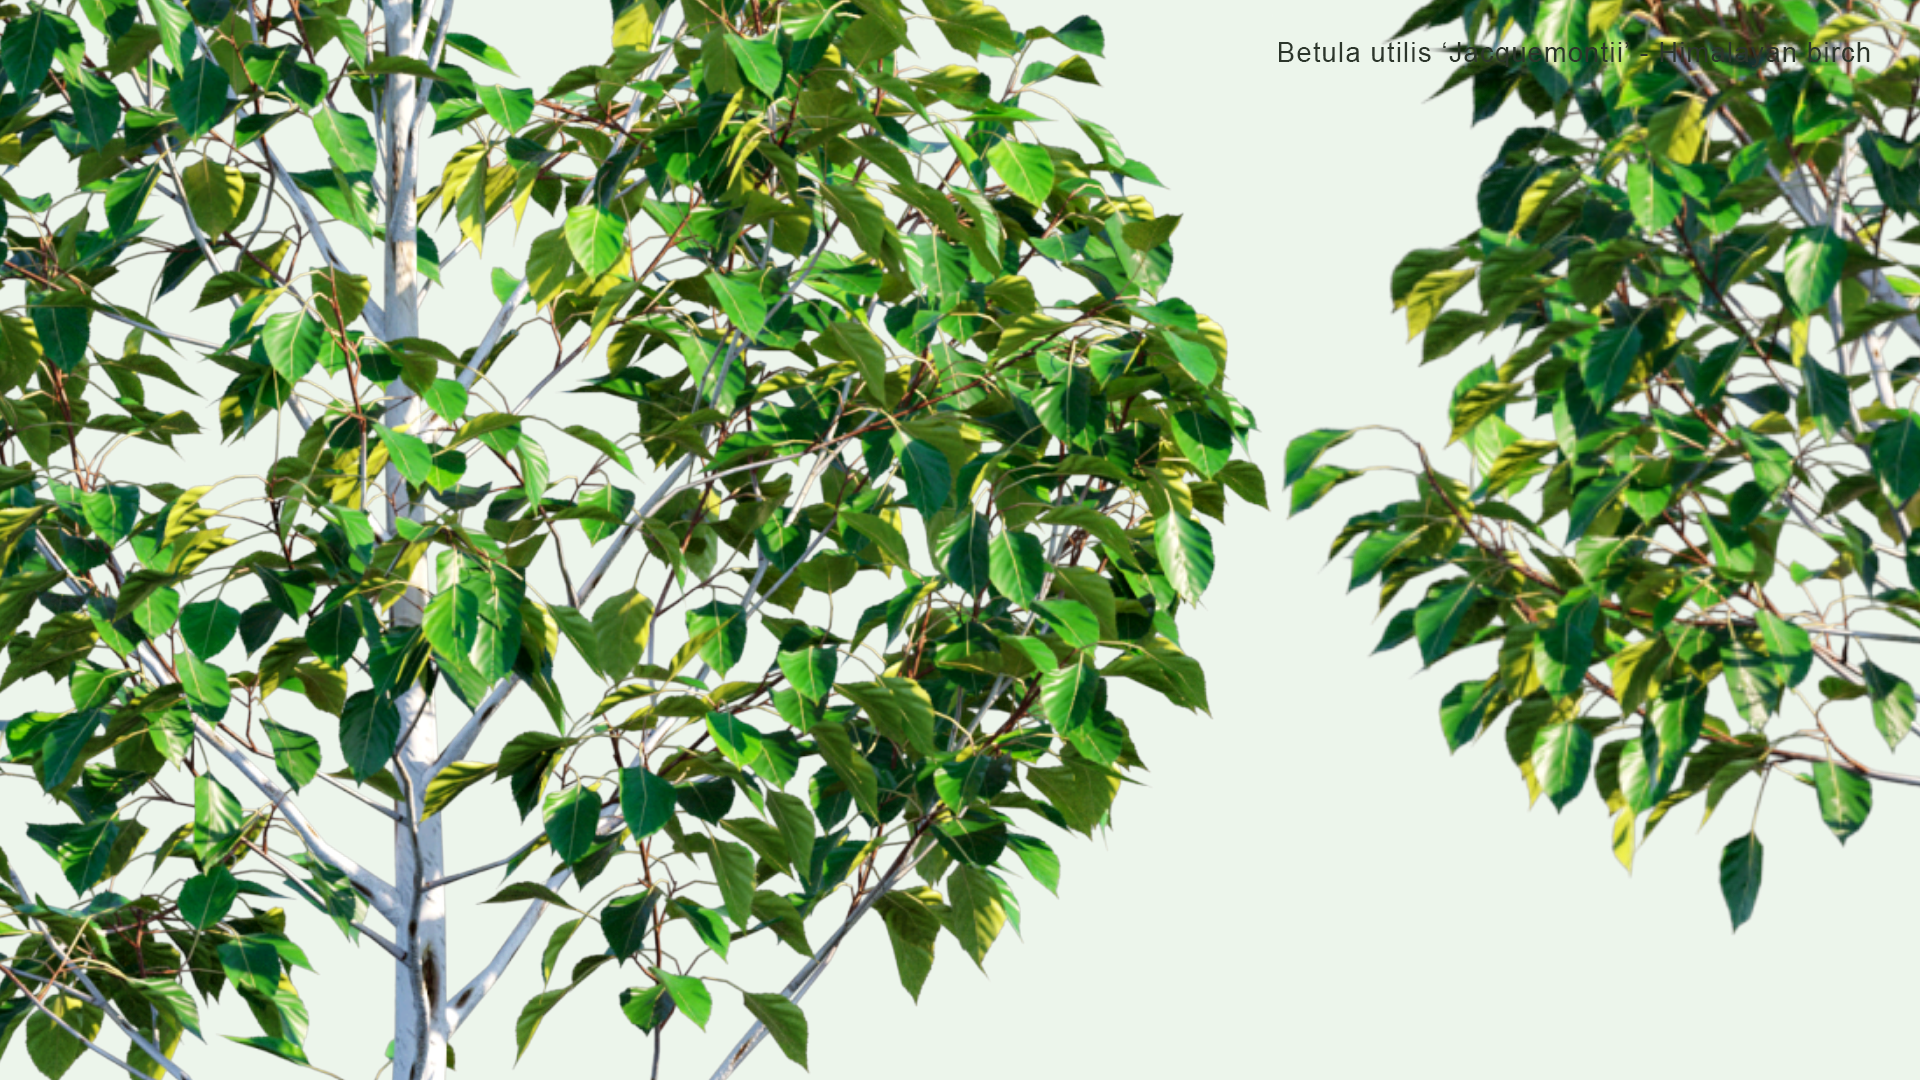 2D Betula Utilis 'Jacquemontii' - Himalayan Birch